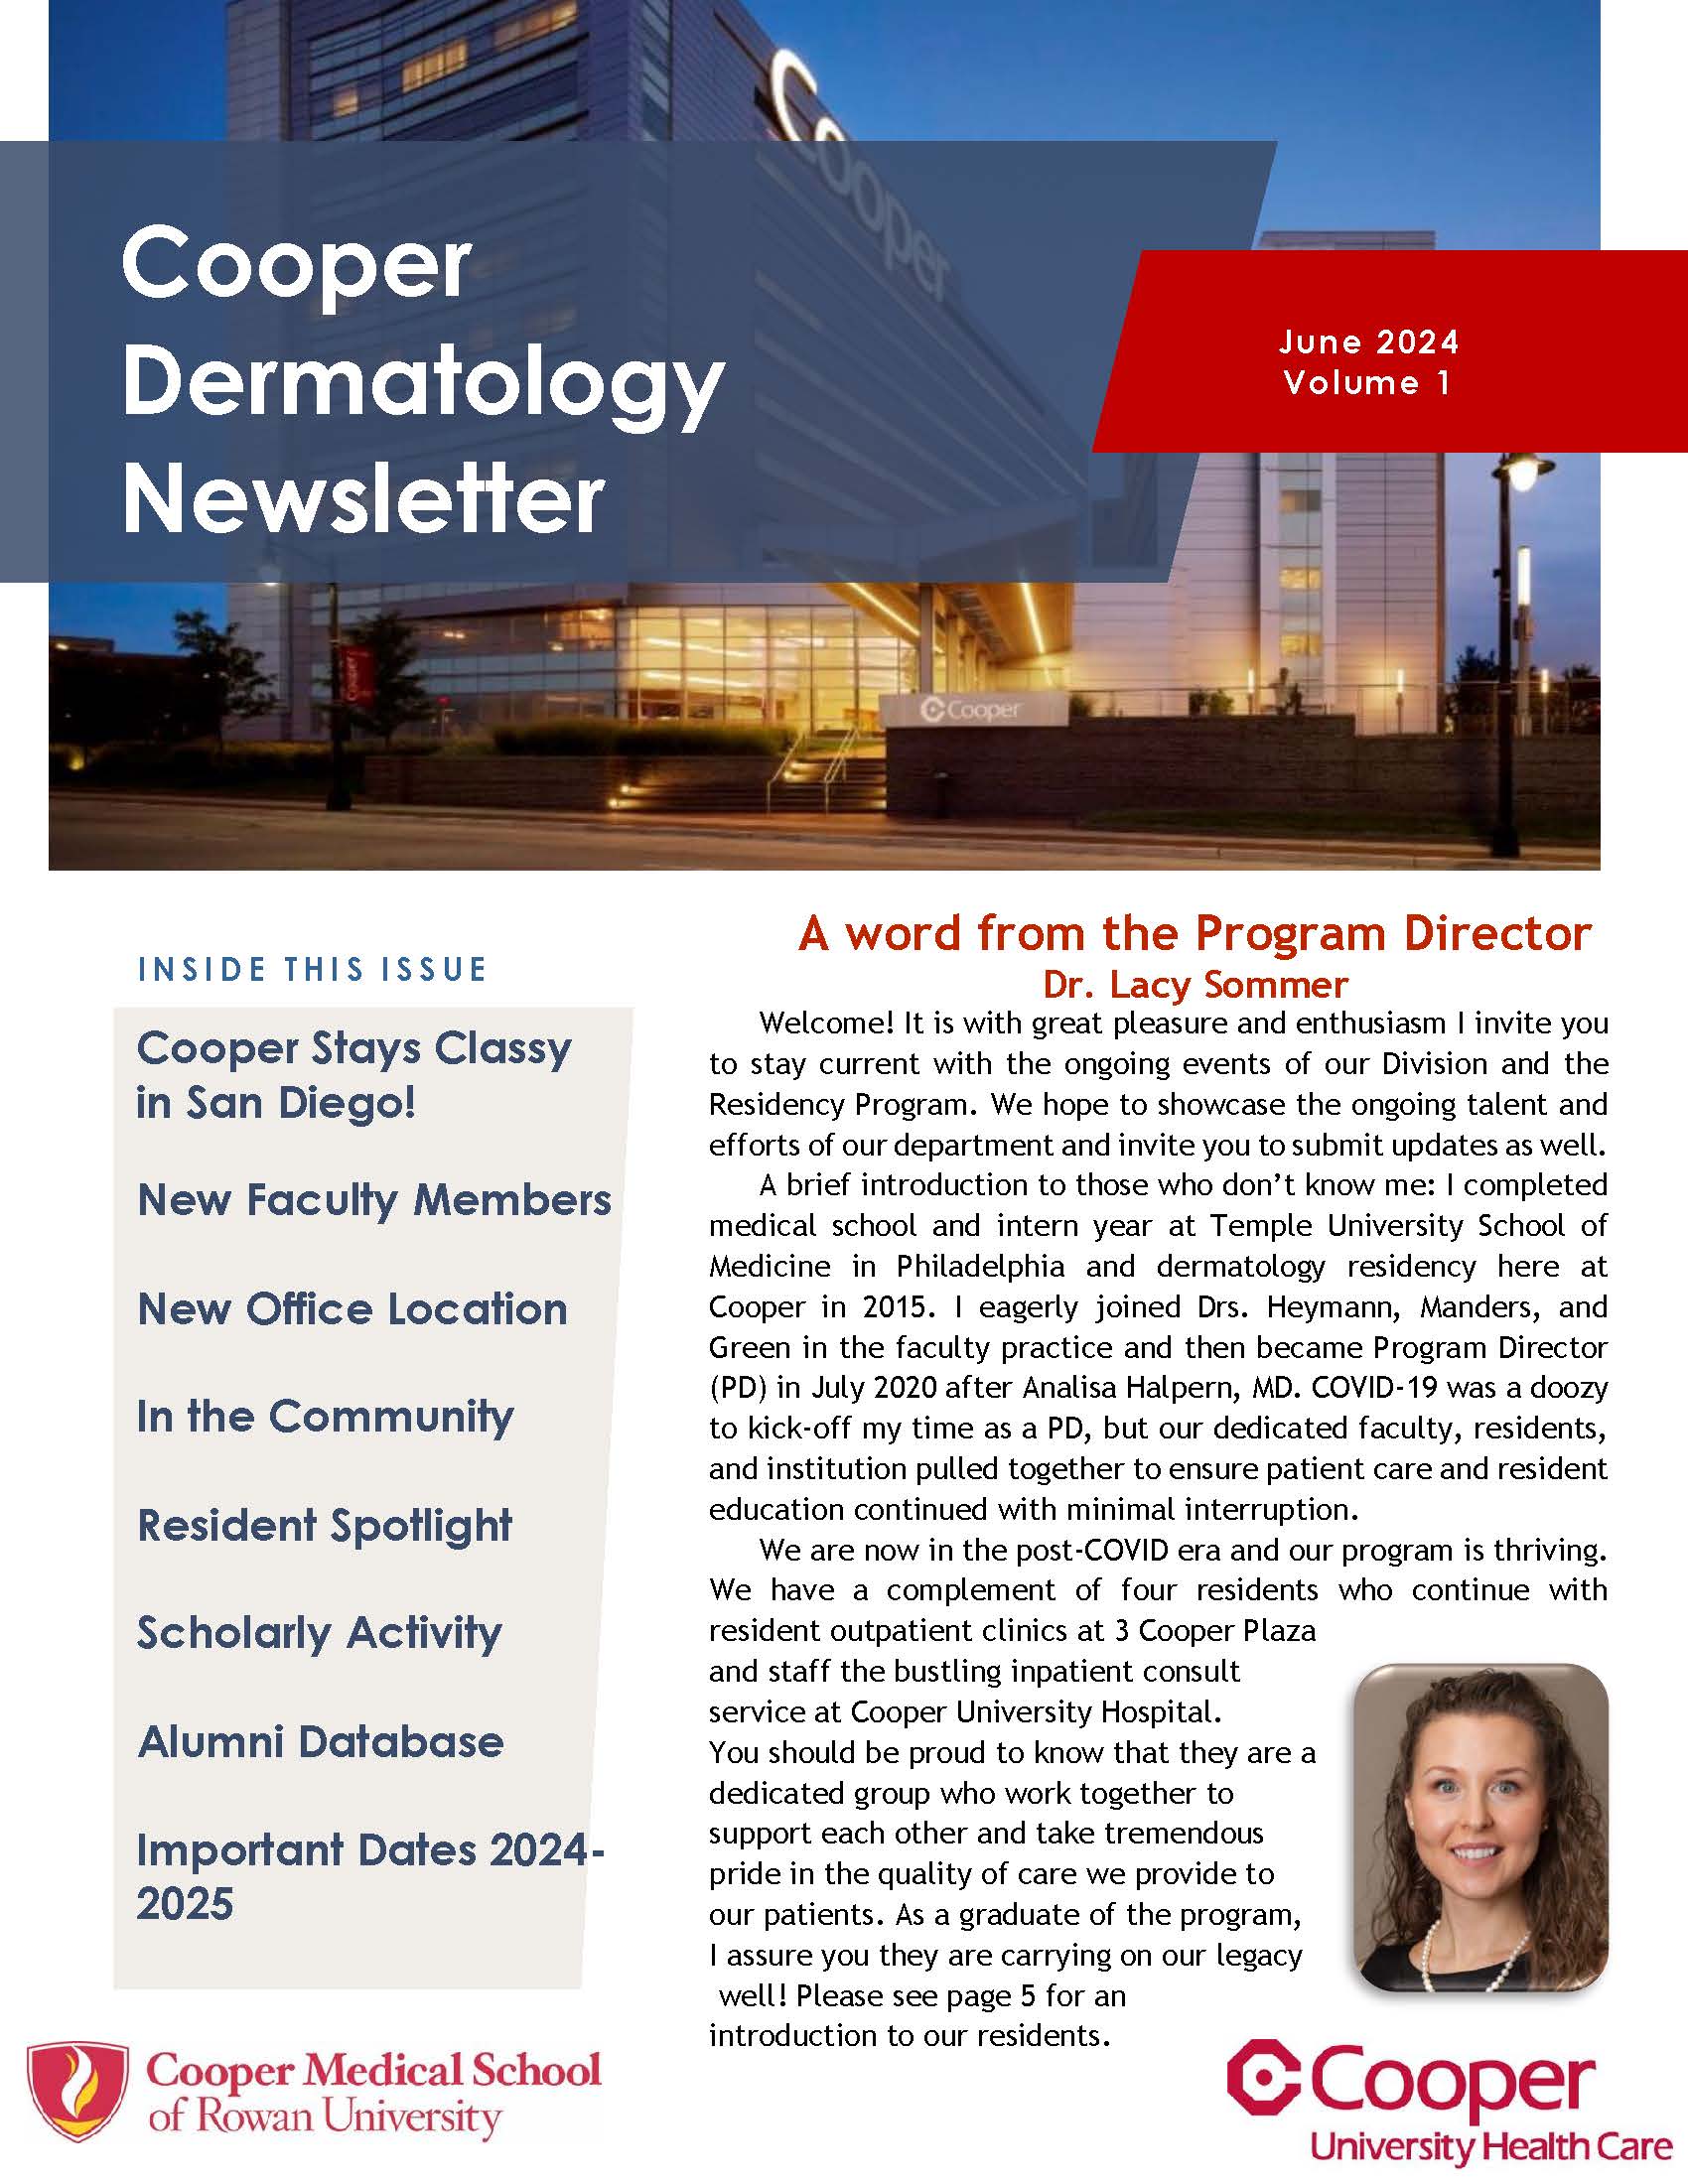 Dermatology Residency Newsletter - Vol 1 Issue 1 June 2024